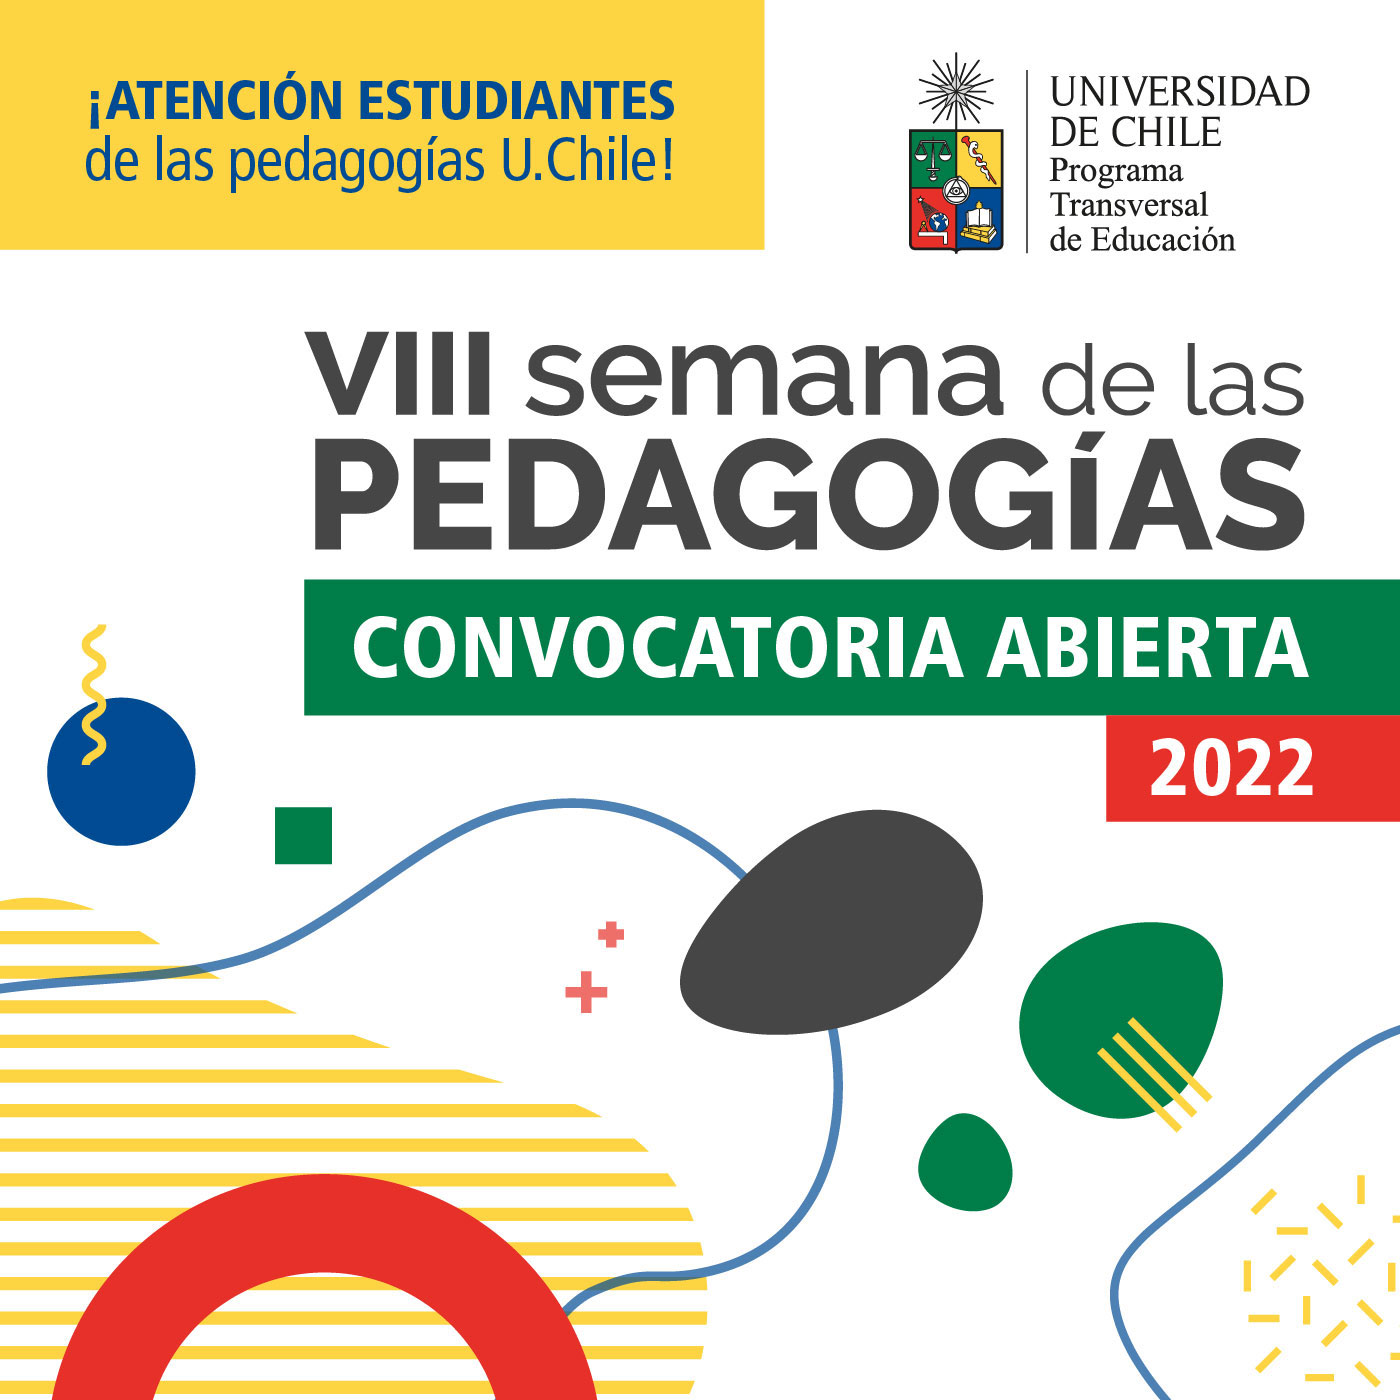 Convocatoria abierta para la VIII Semana de las Pedagogías de la Universidad de Chile